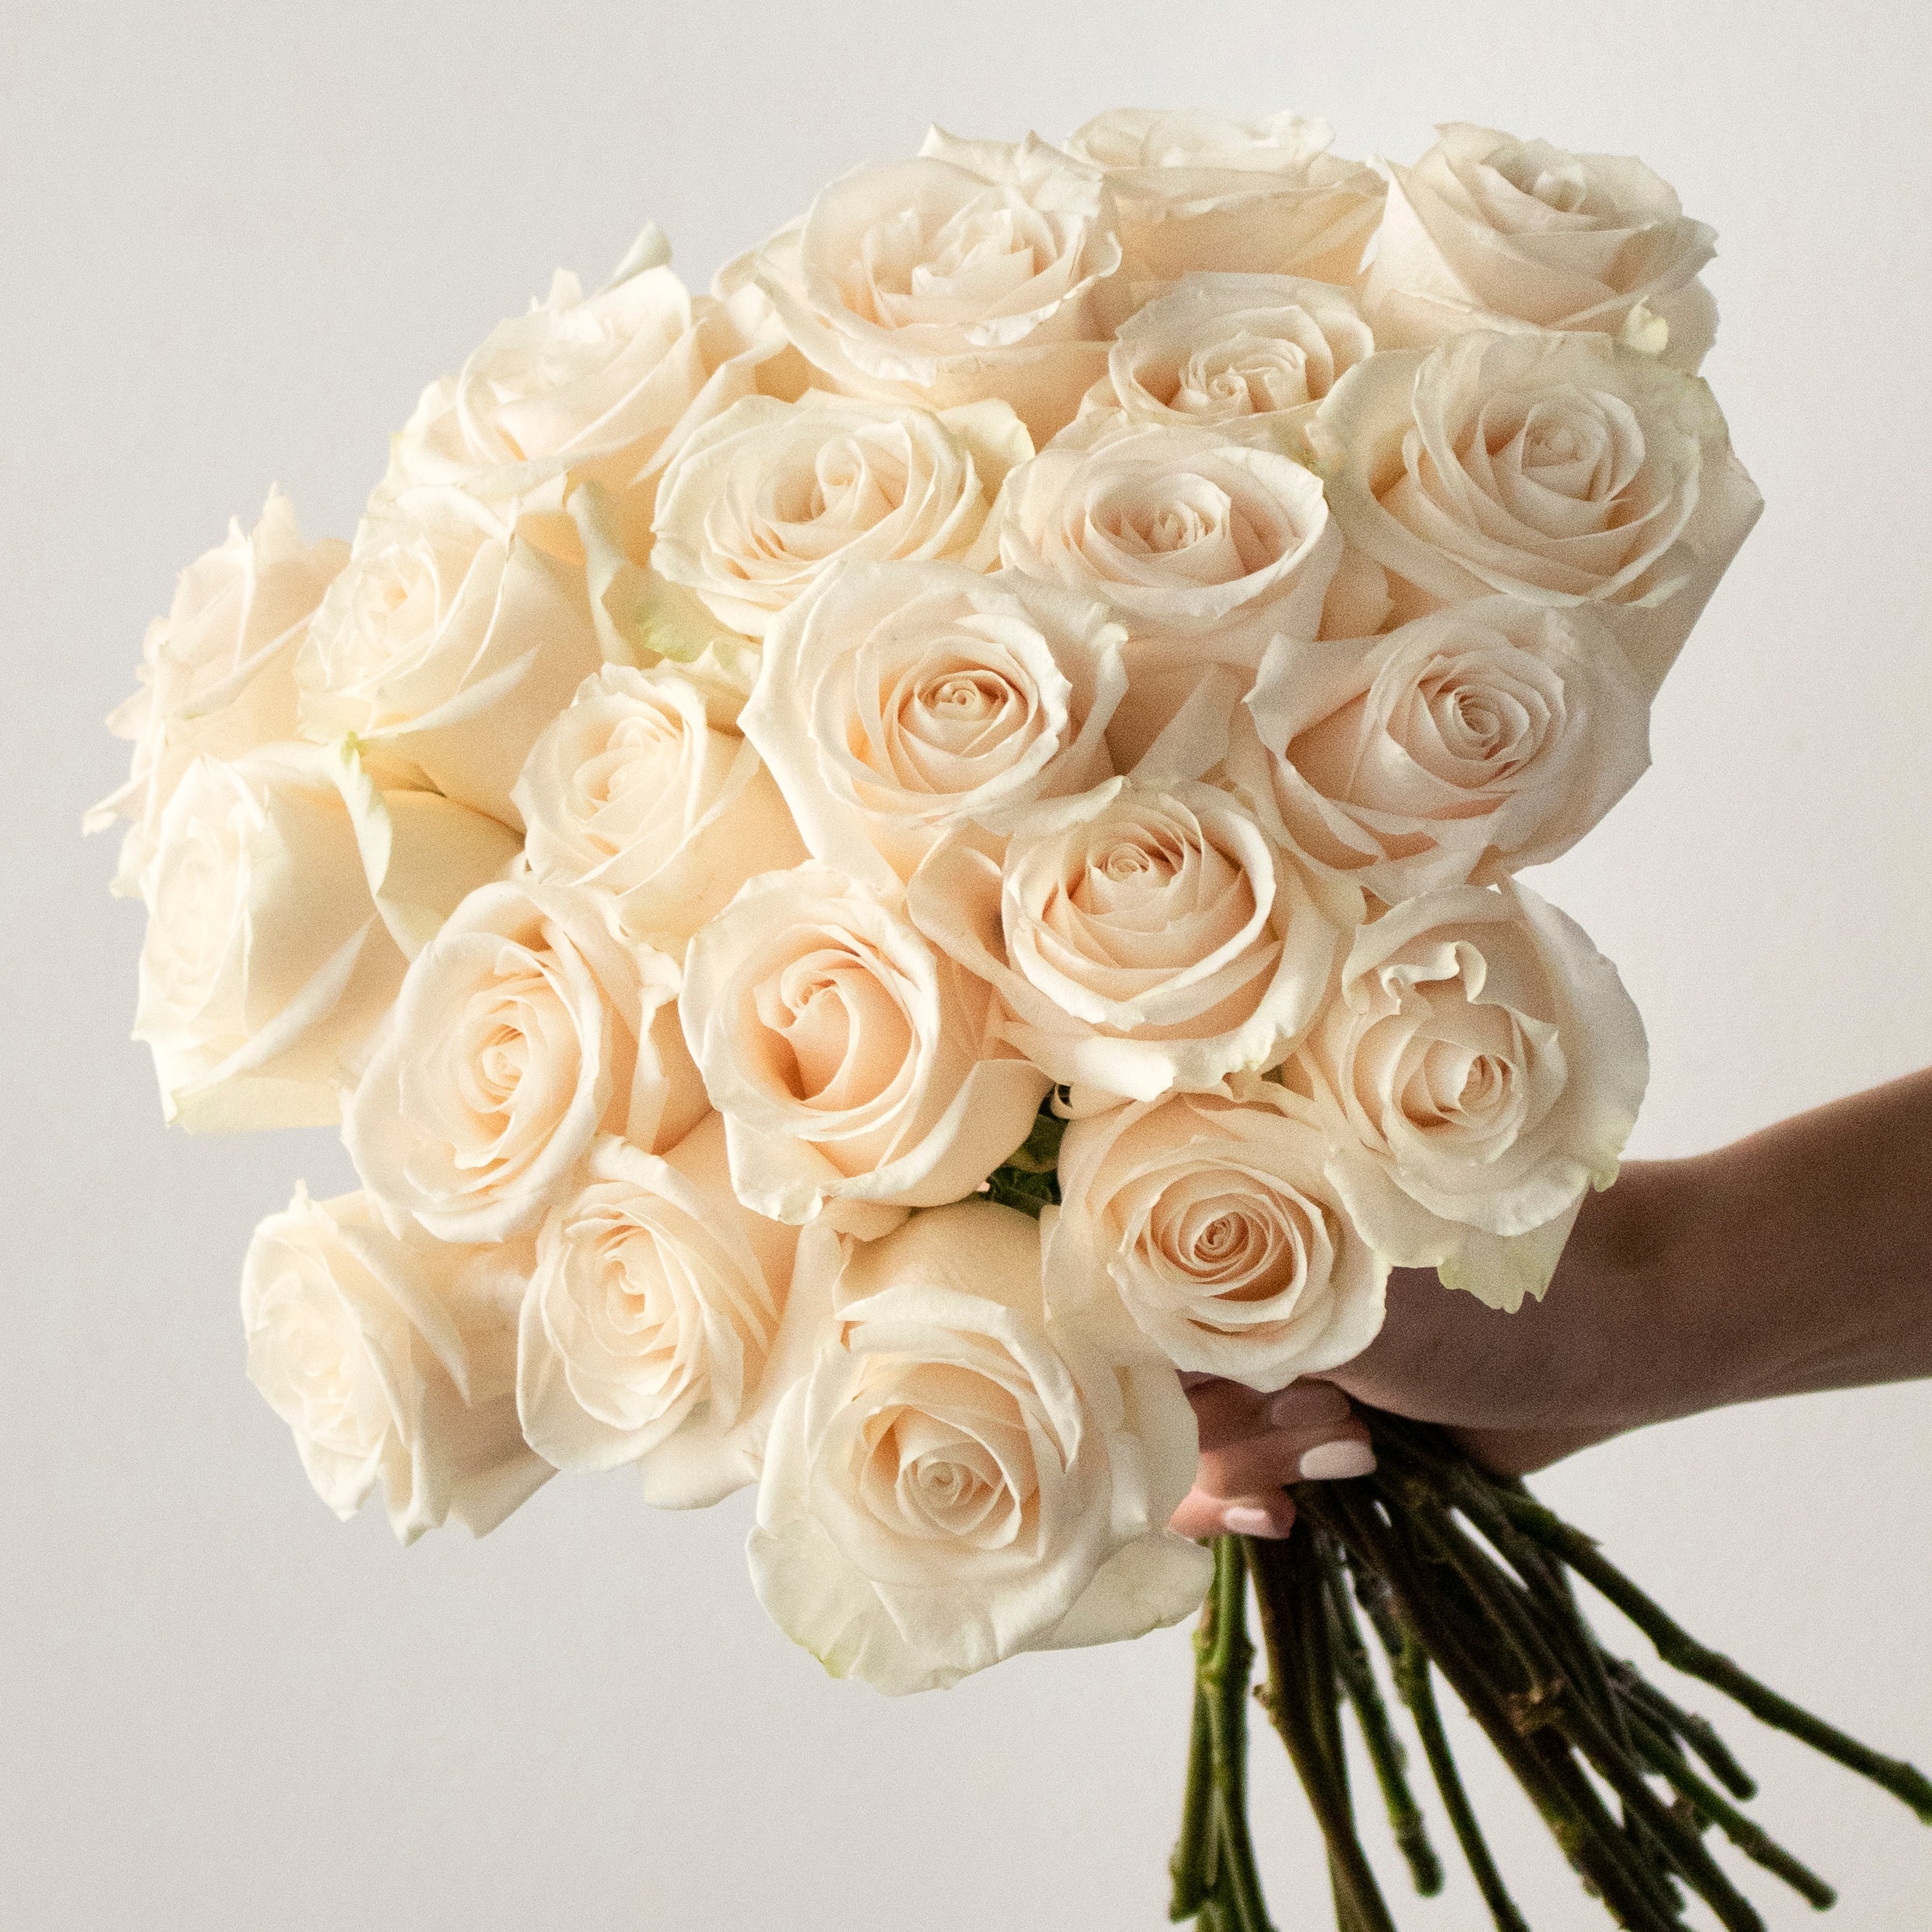 https://www.flowerfix.com/cdn/shop/products/vendela-white-rose-flower-wholesale-E1215H_2482x.jpg?v=1624376599